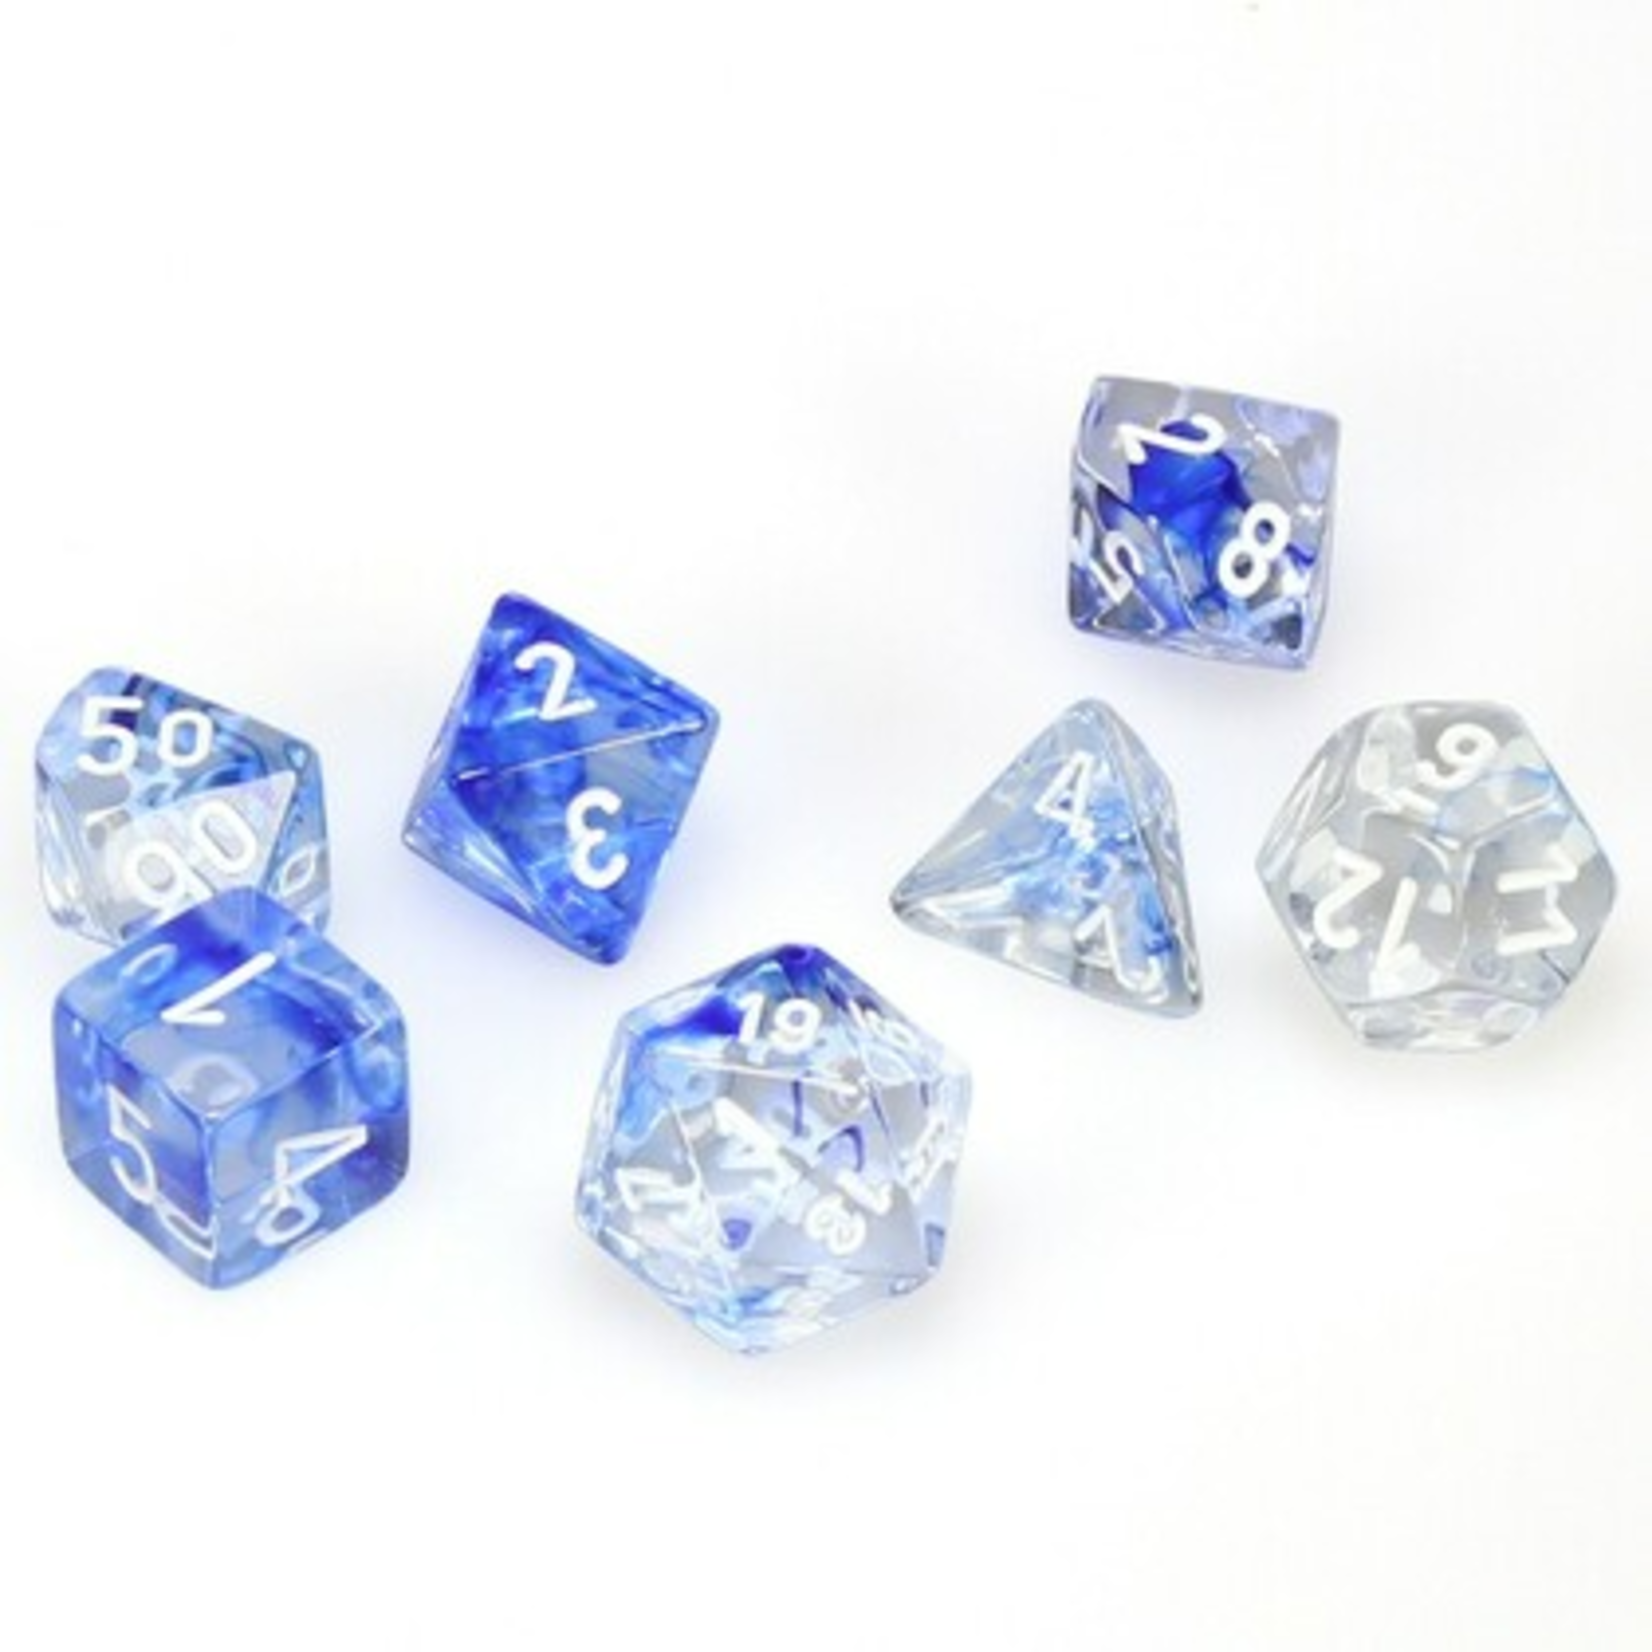 Chessex Chessex Nebula Dark Blue with White Polyhedral 7 die set